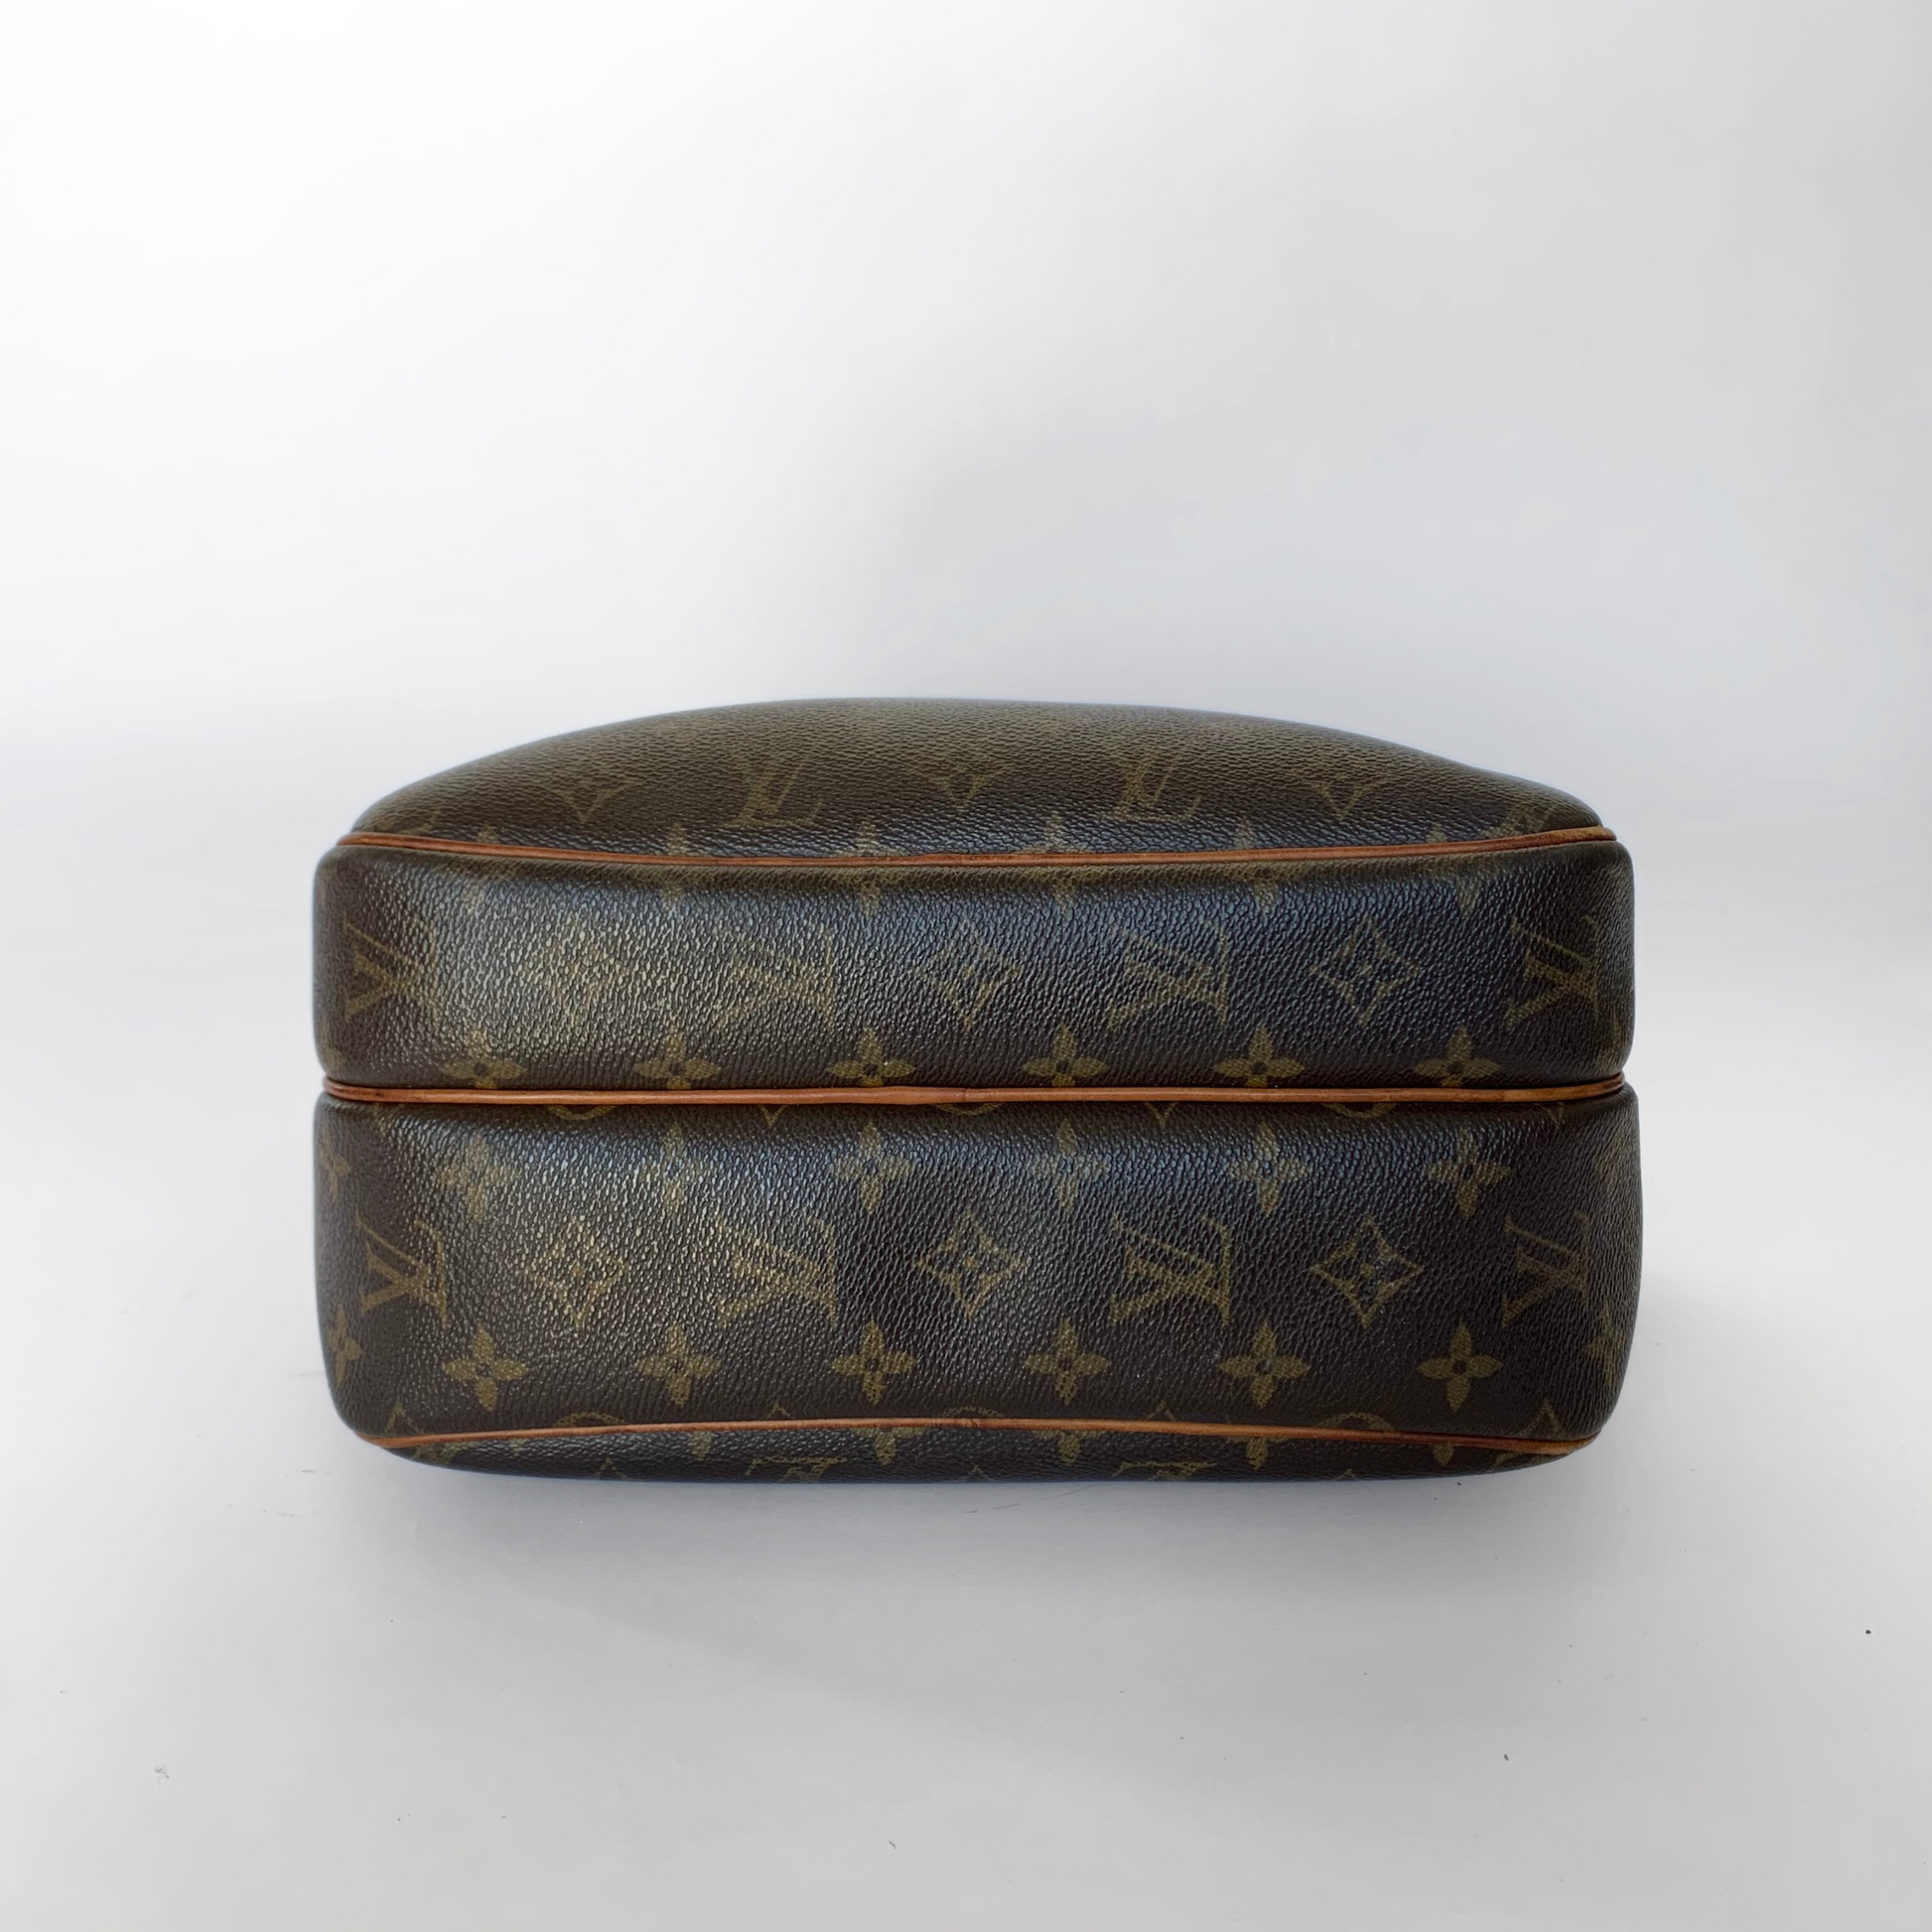 Louis Vuitton Louis Vuitton Reporter PM Monogram Canvas - Crossbody bags - Etoile Luxury Vintage